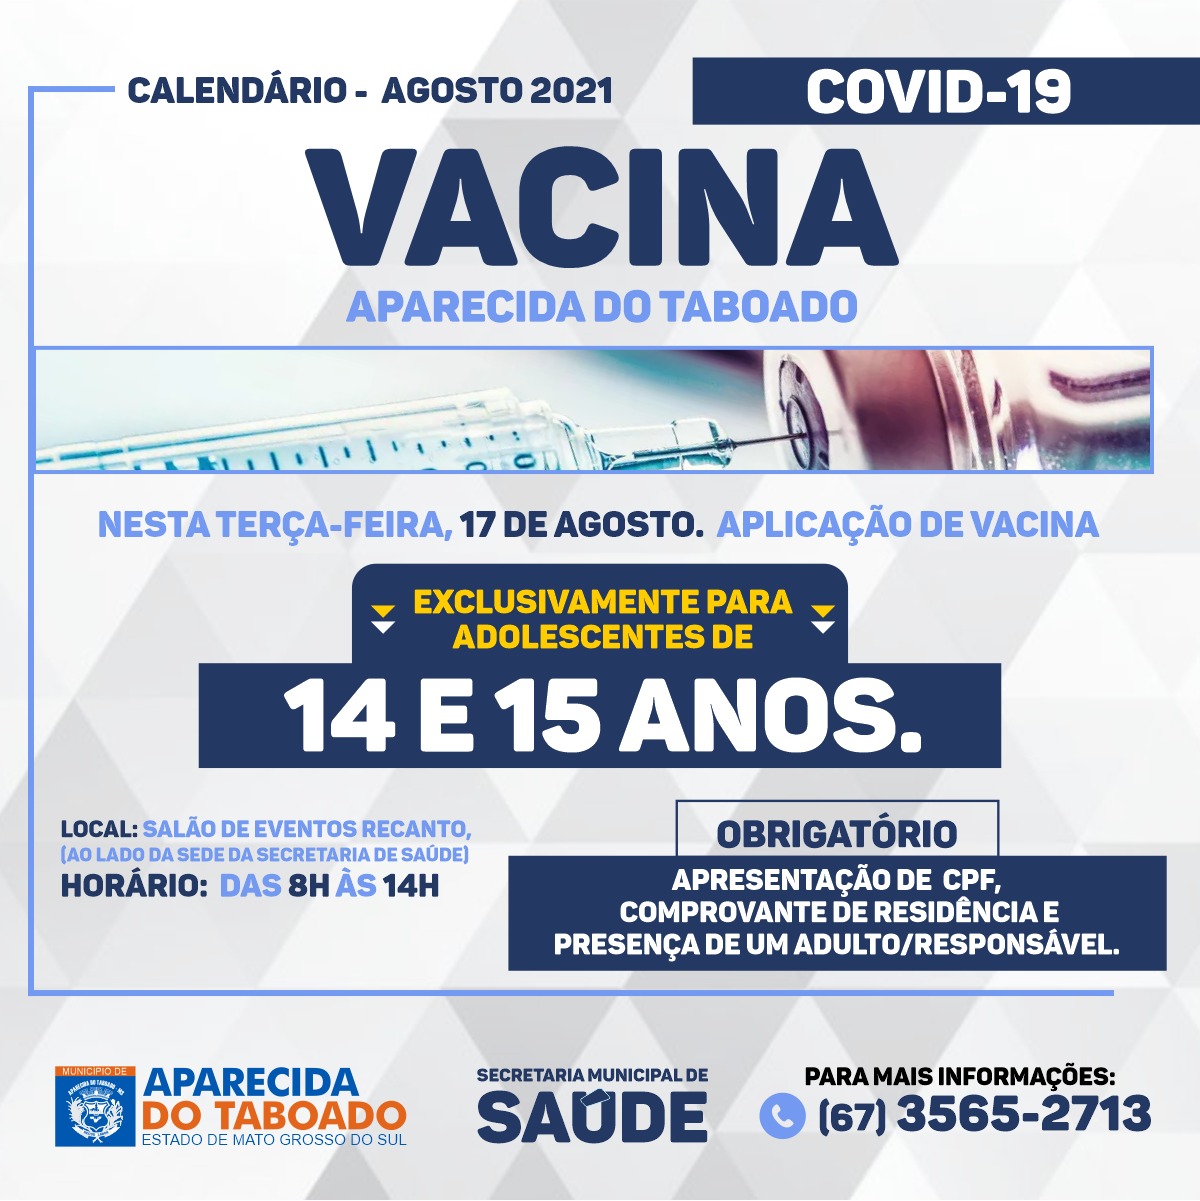 VacinaAdolescente (5)